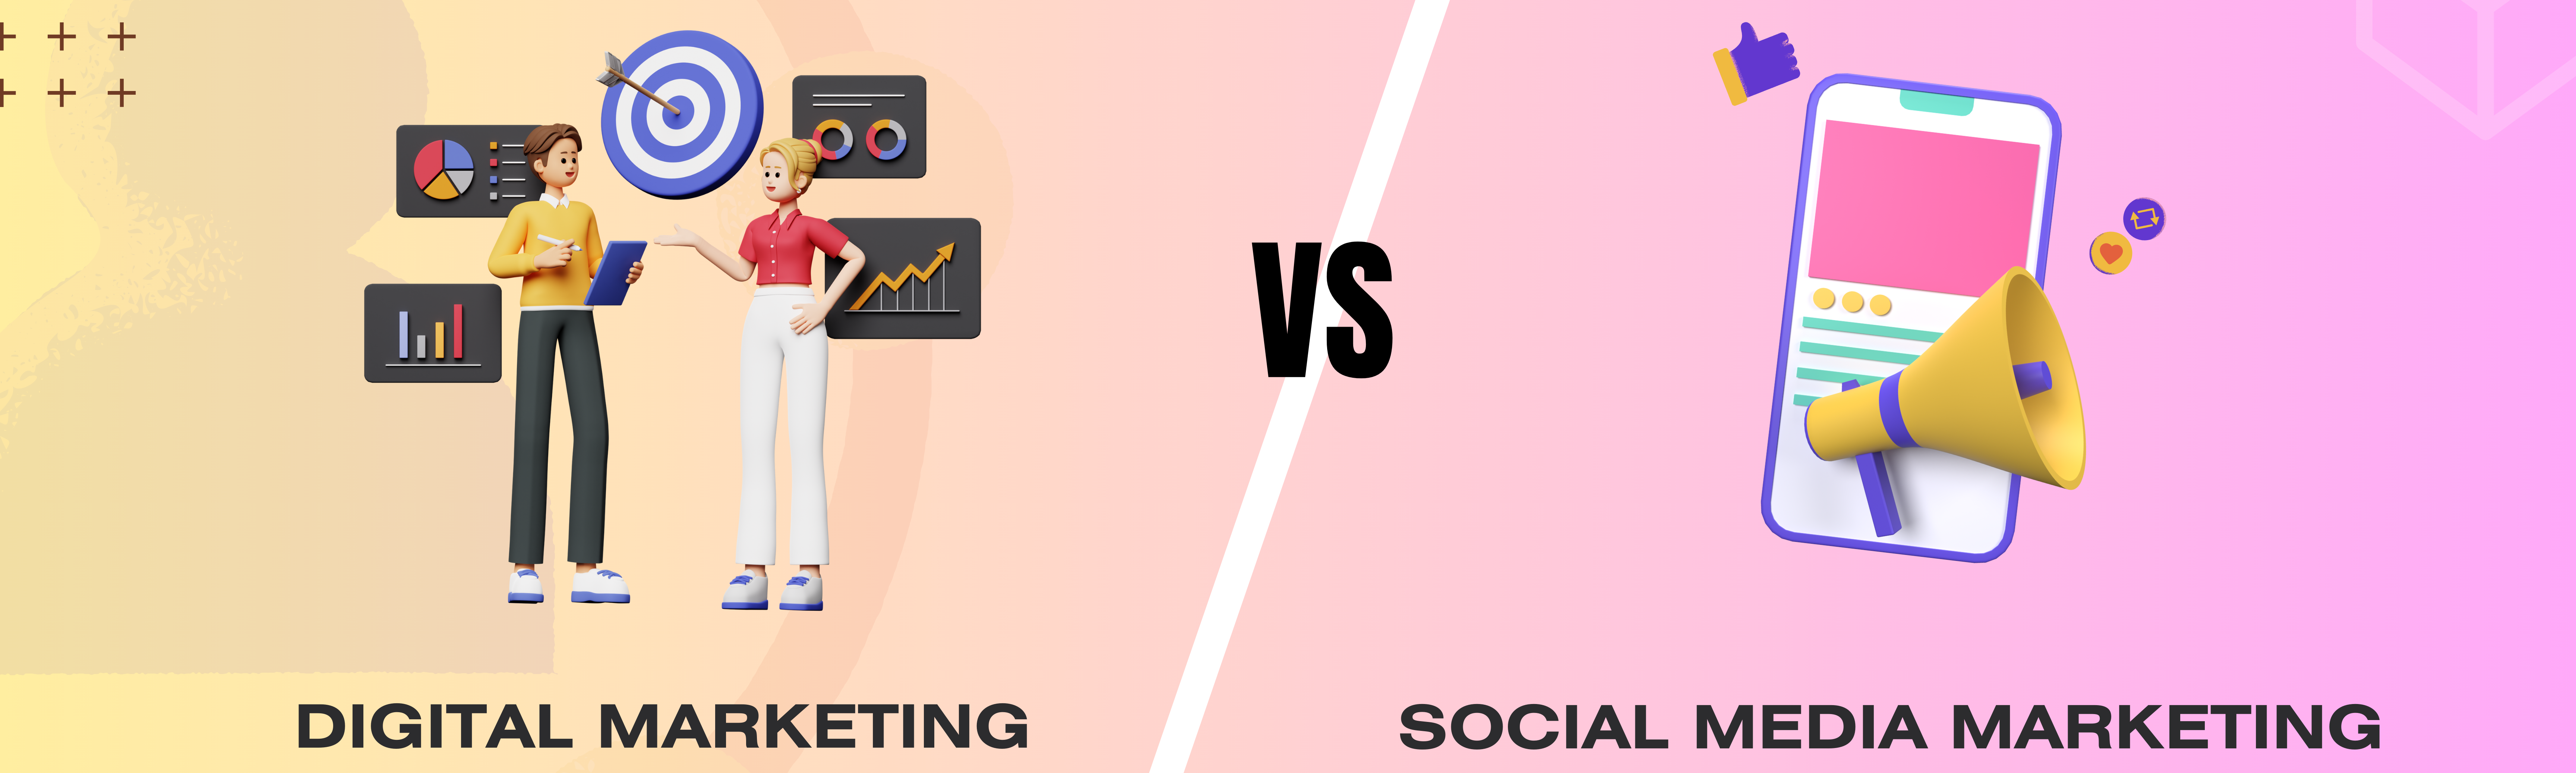 Digital vs. Social Media: The Best for Growth